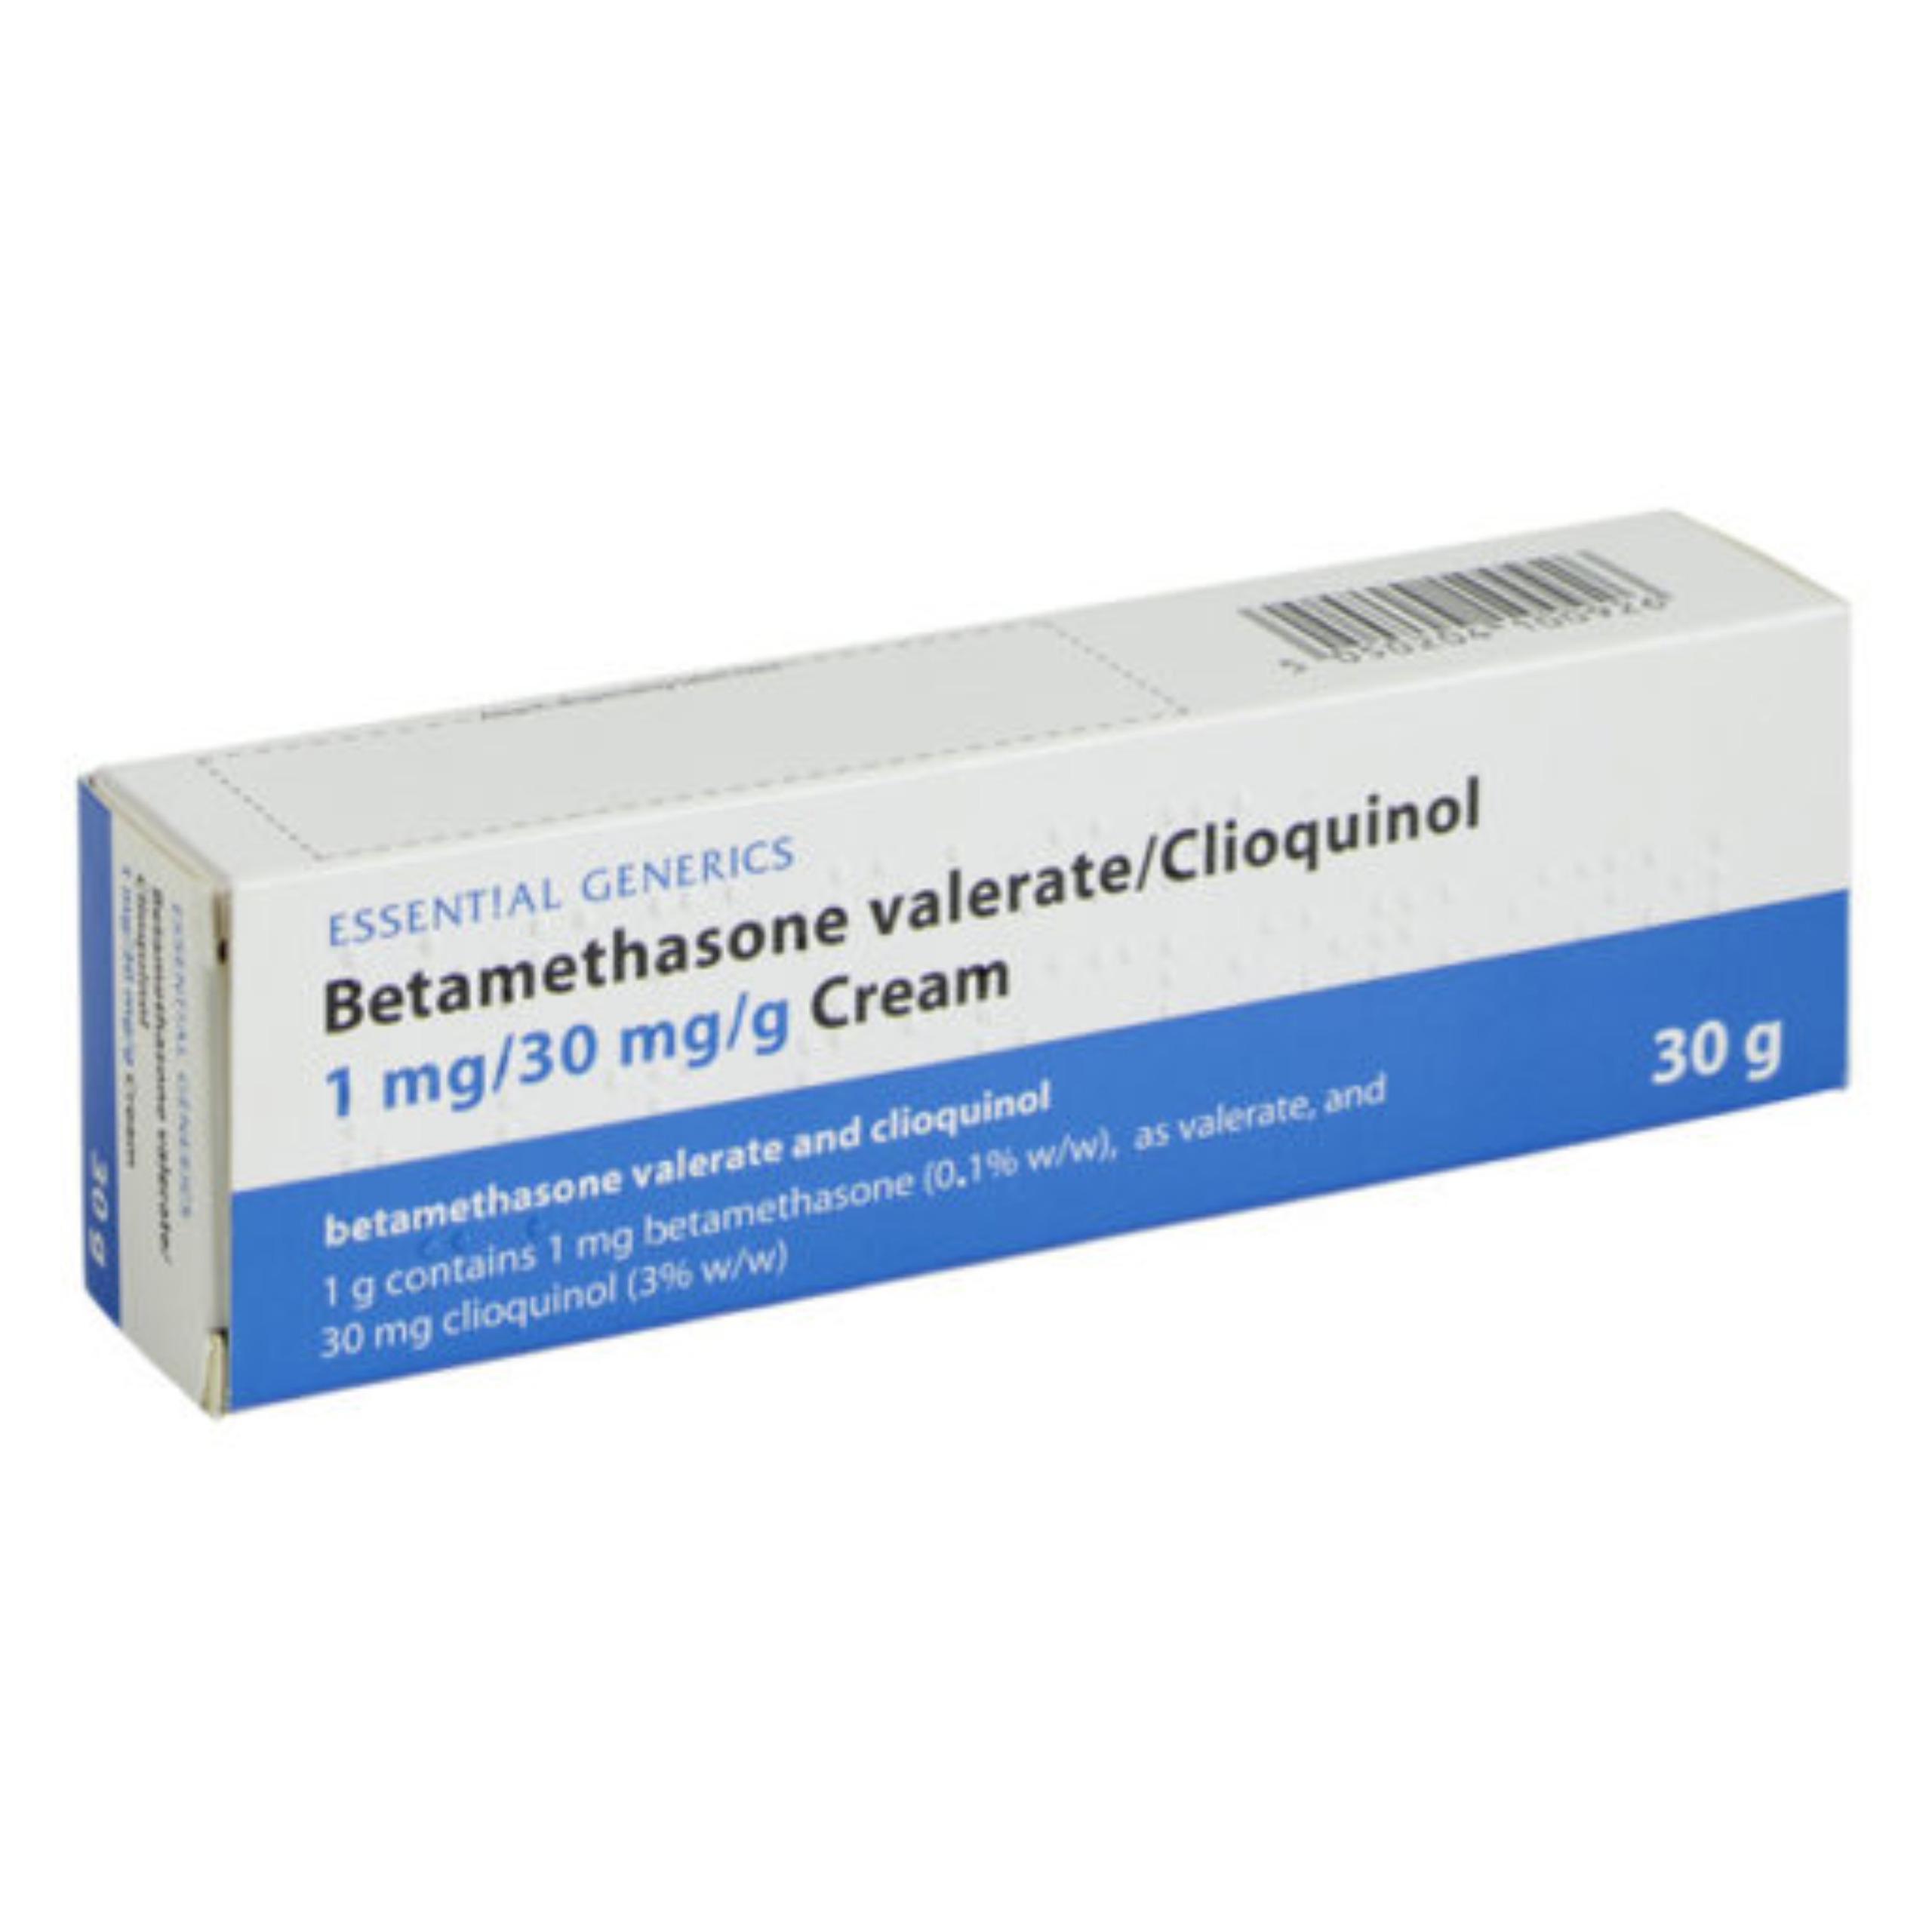 Betamethasone with Clioquinol Cream